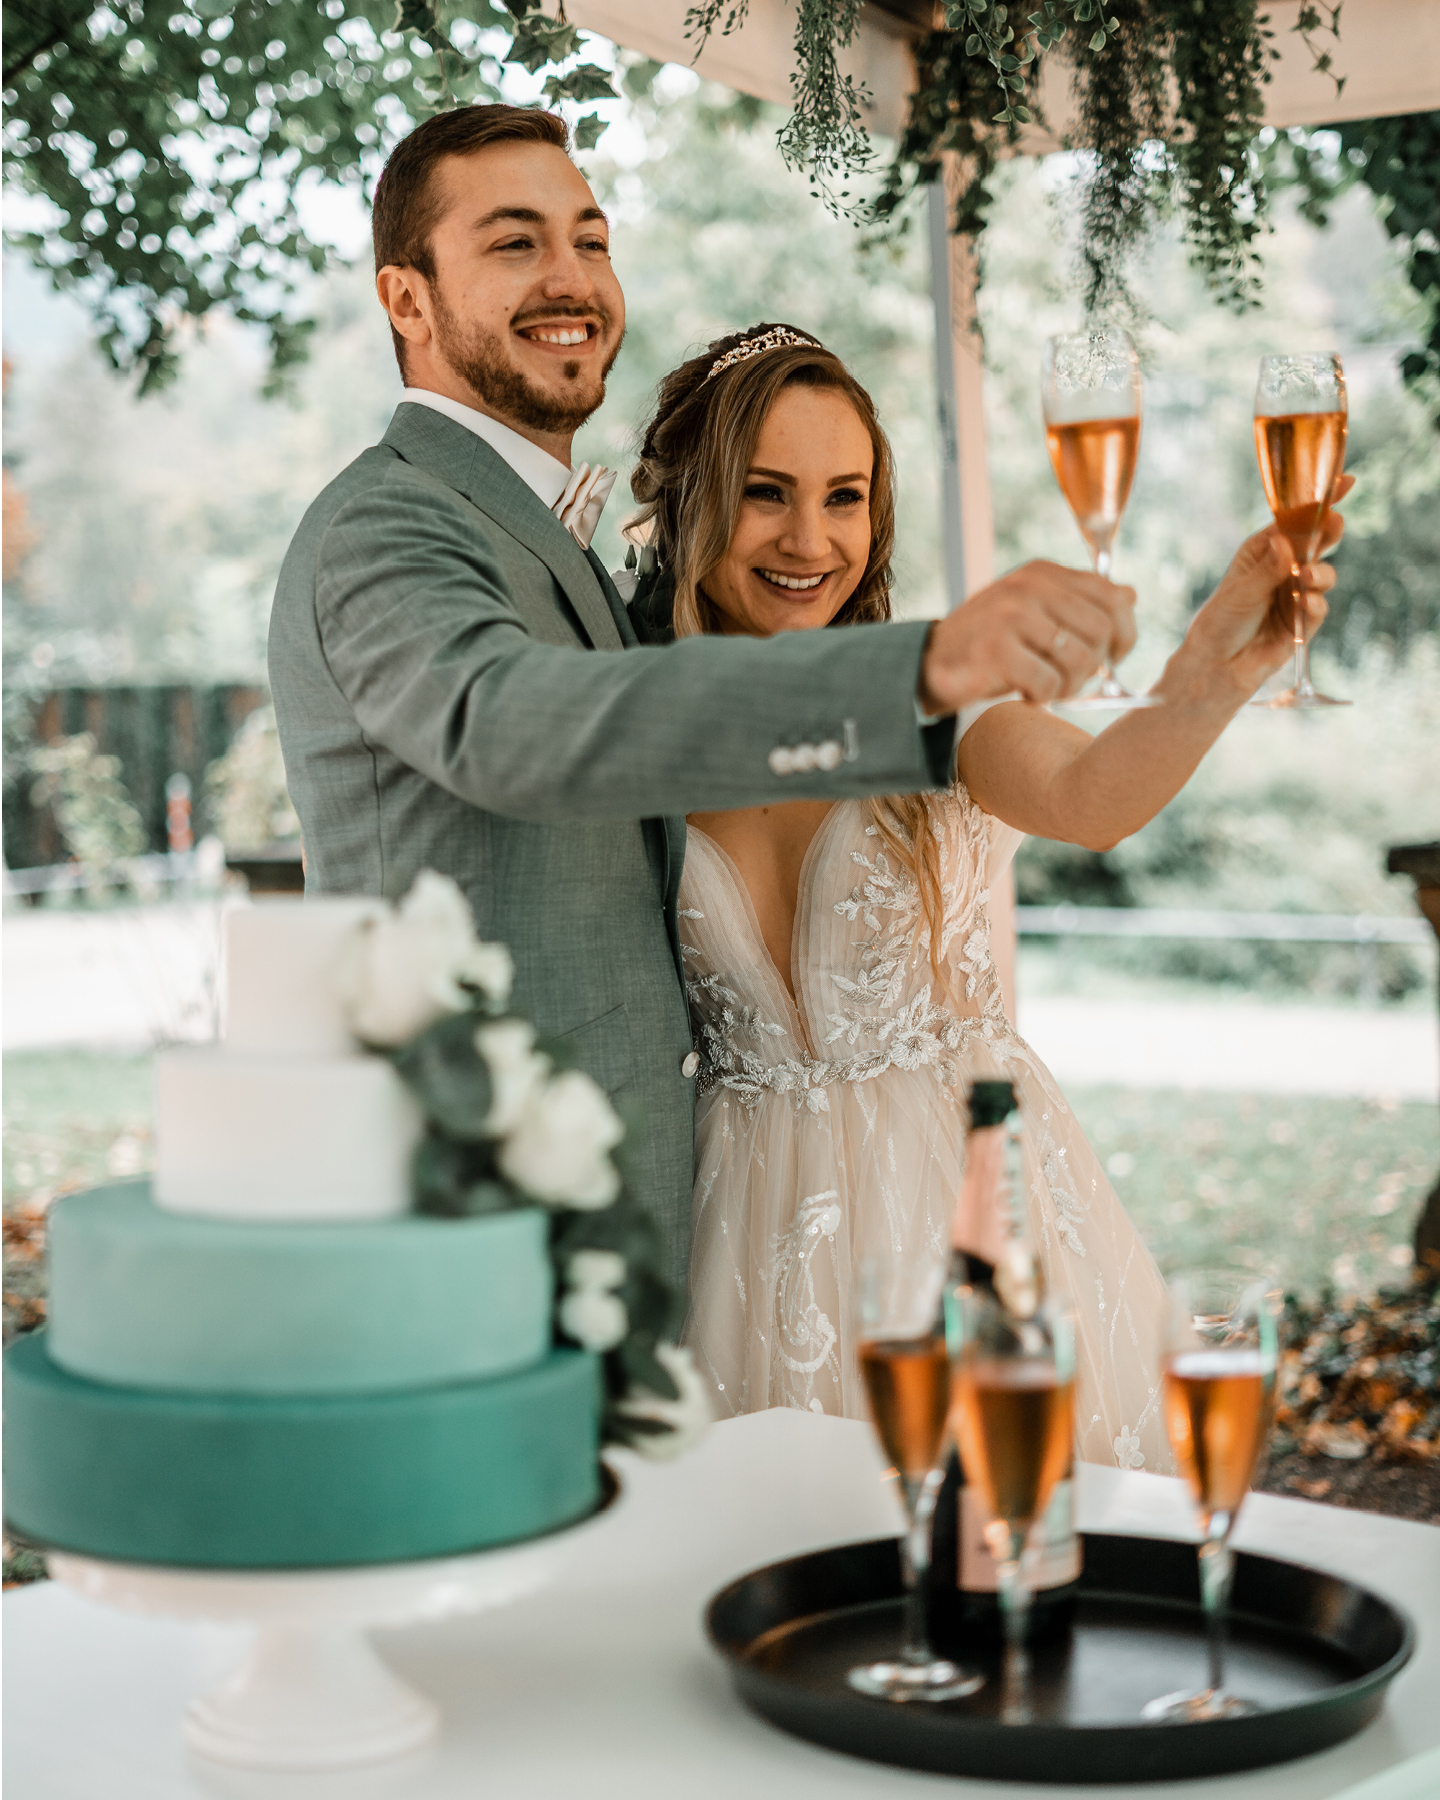 Brautpaar stößt mit Rosésekt auf die Hochzeit an